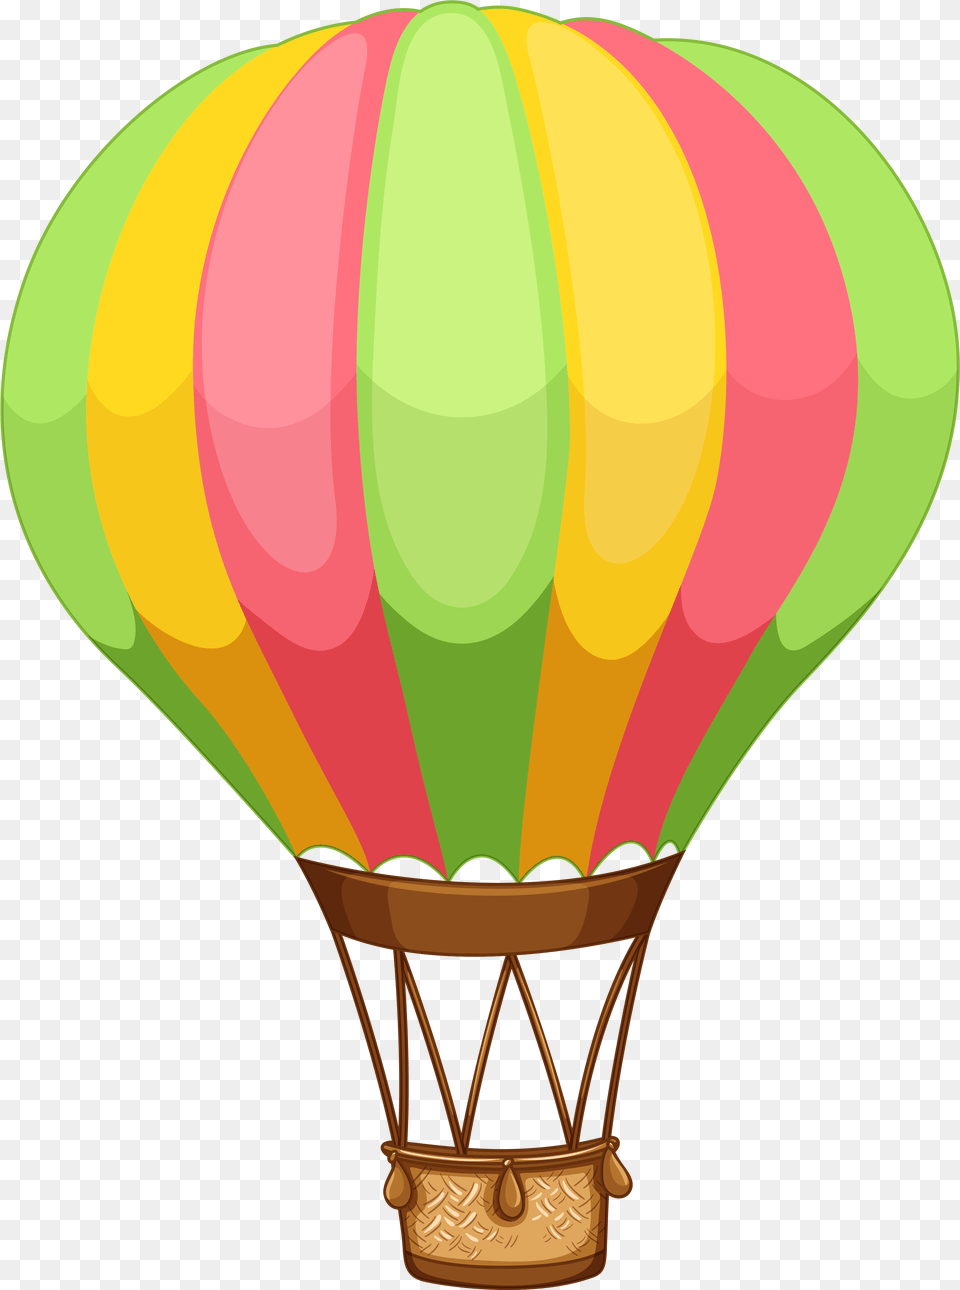 Hot Air Balloon Royalty Clip Art Hot Air Balloon Clipart, Aircraft, Hot Air Balloon, Transportation, Vehicle Free Png